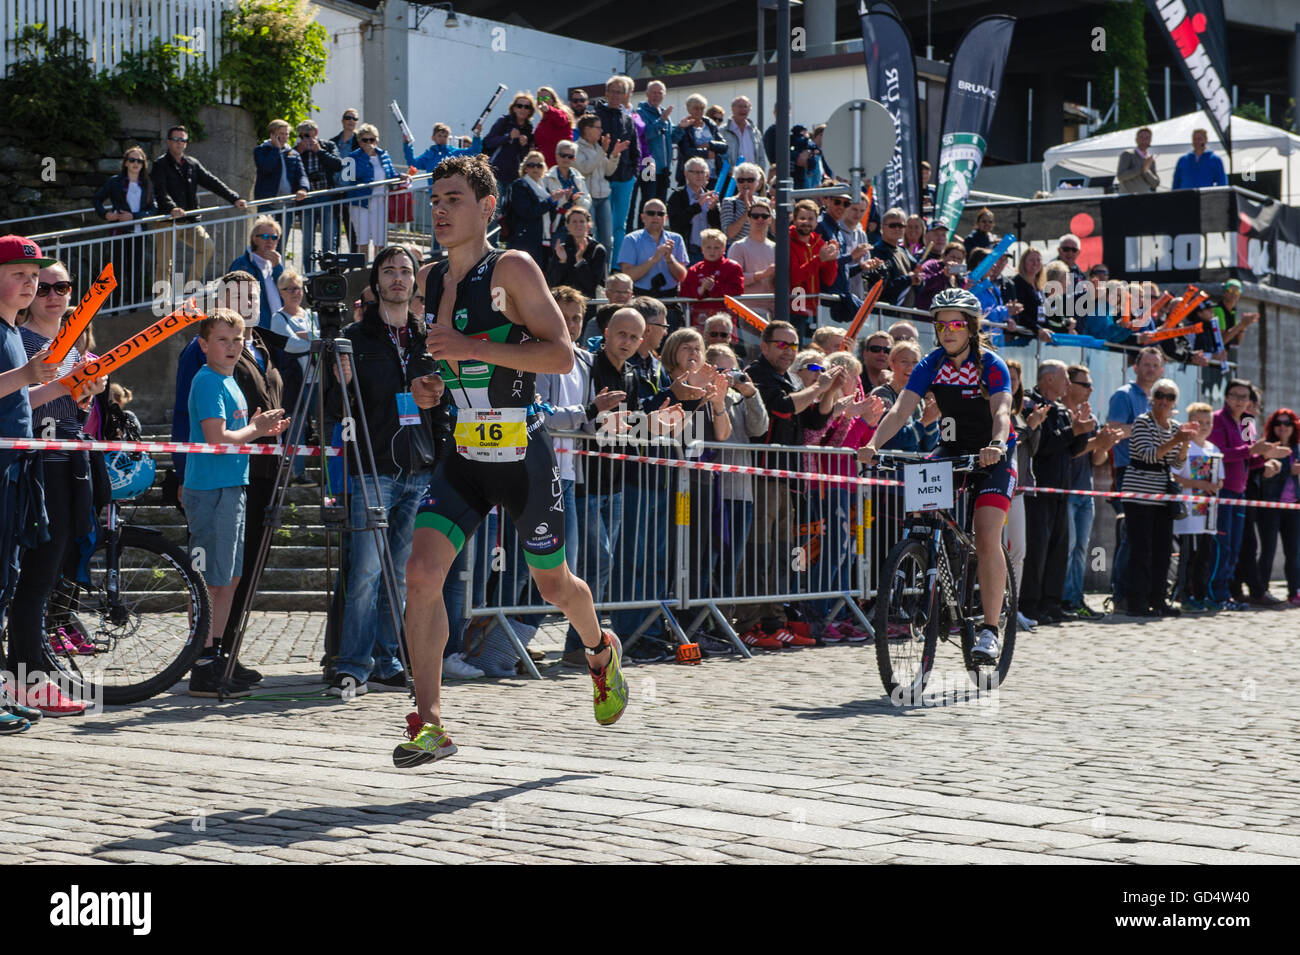 Gustav Iden, eine norwegische Profi-Triathletin, auf der Laufstrecke Ironman 70.3 Norwegens, einem Triathlon in Haugesund. Iden fuhr fort, um die Männer Rennen zu gewinnen. Stockfoto